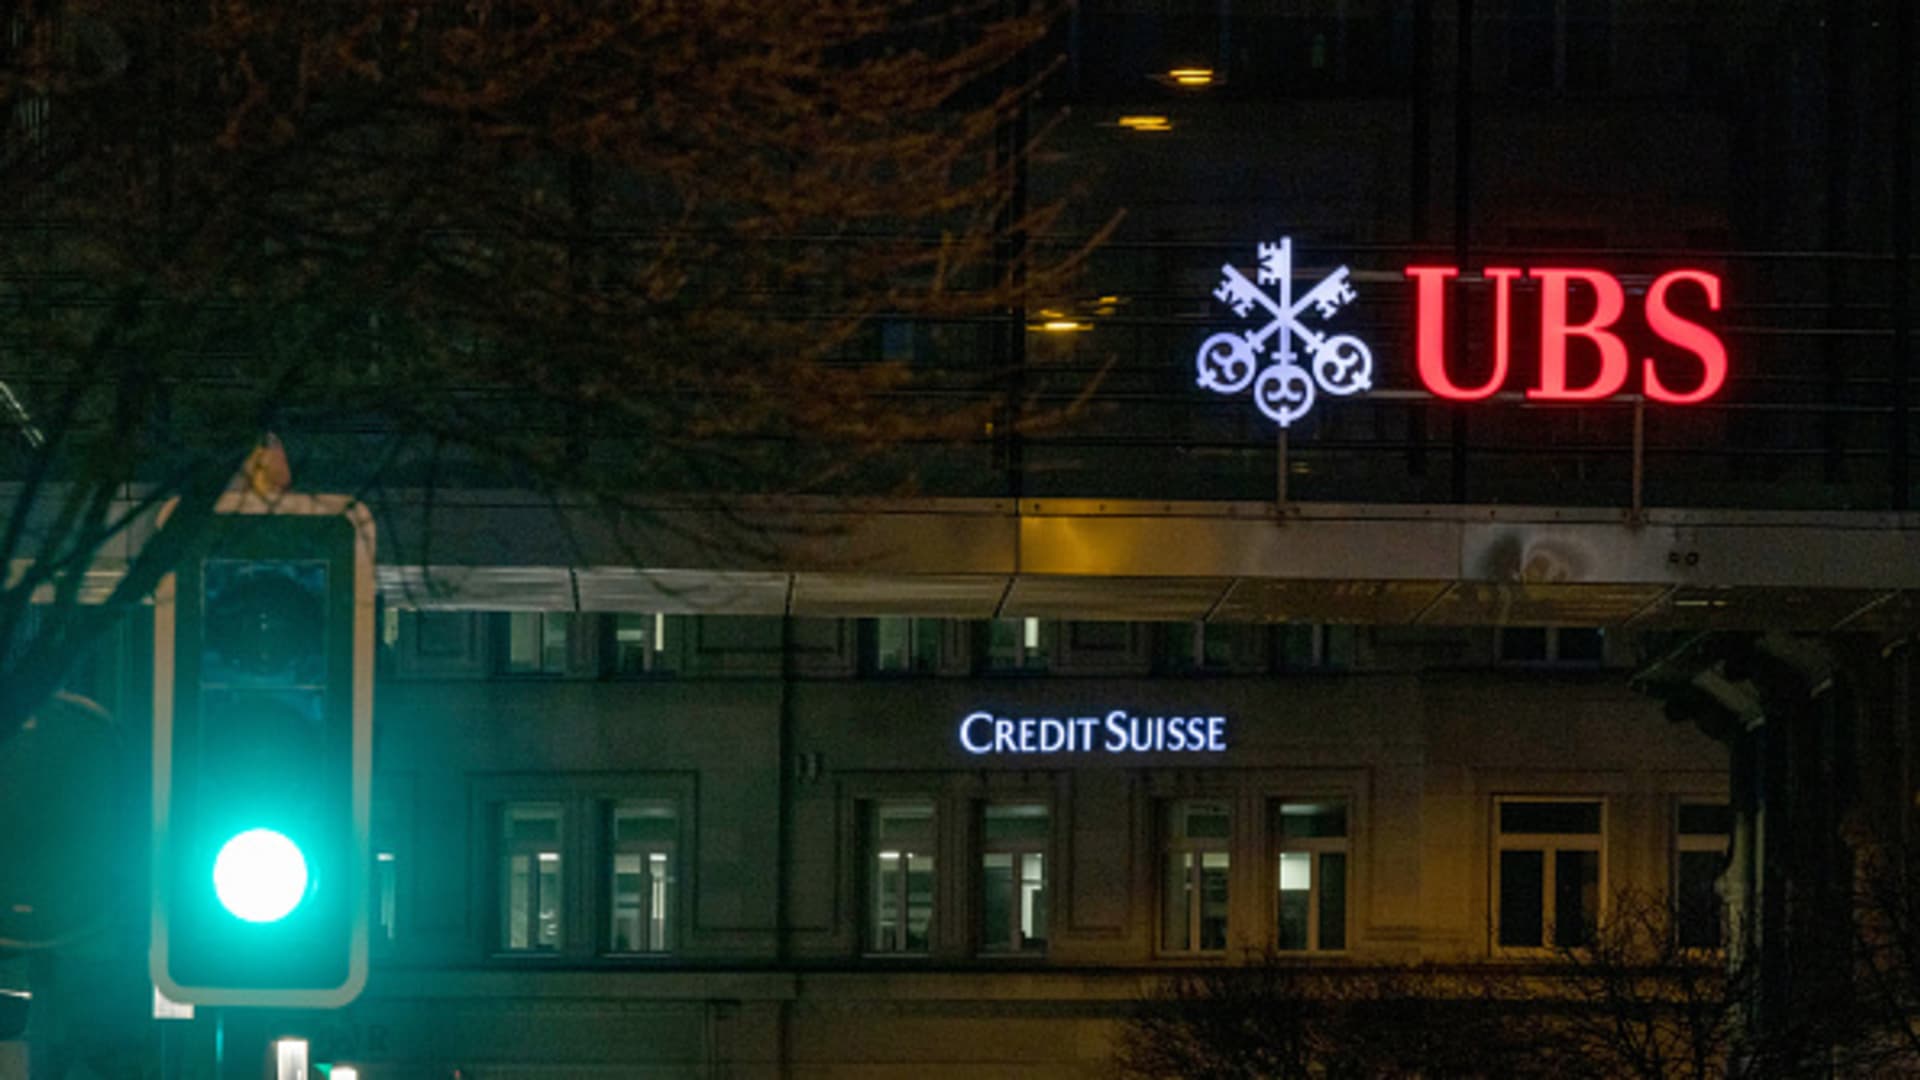 टेकओवर डील के बाद UBS के शेयरों में 10%, क्रेडिट सुइस में 60% की गिरावट आई